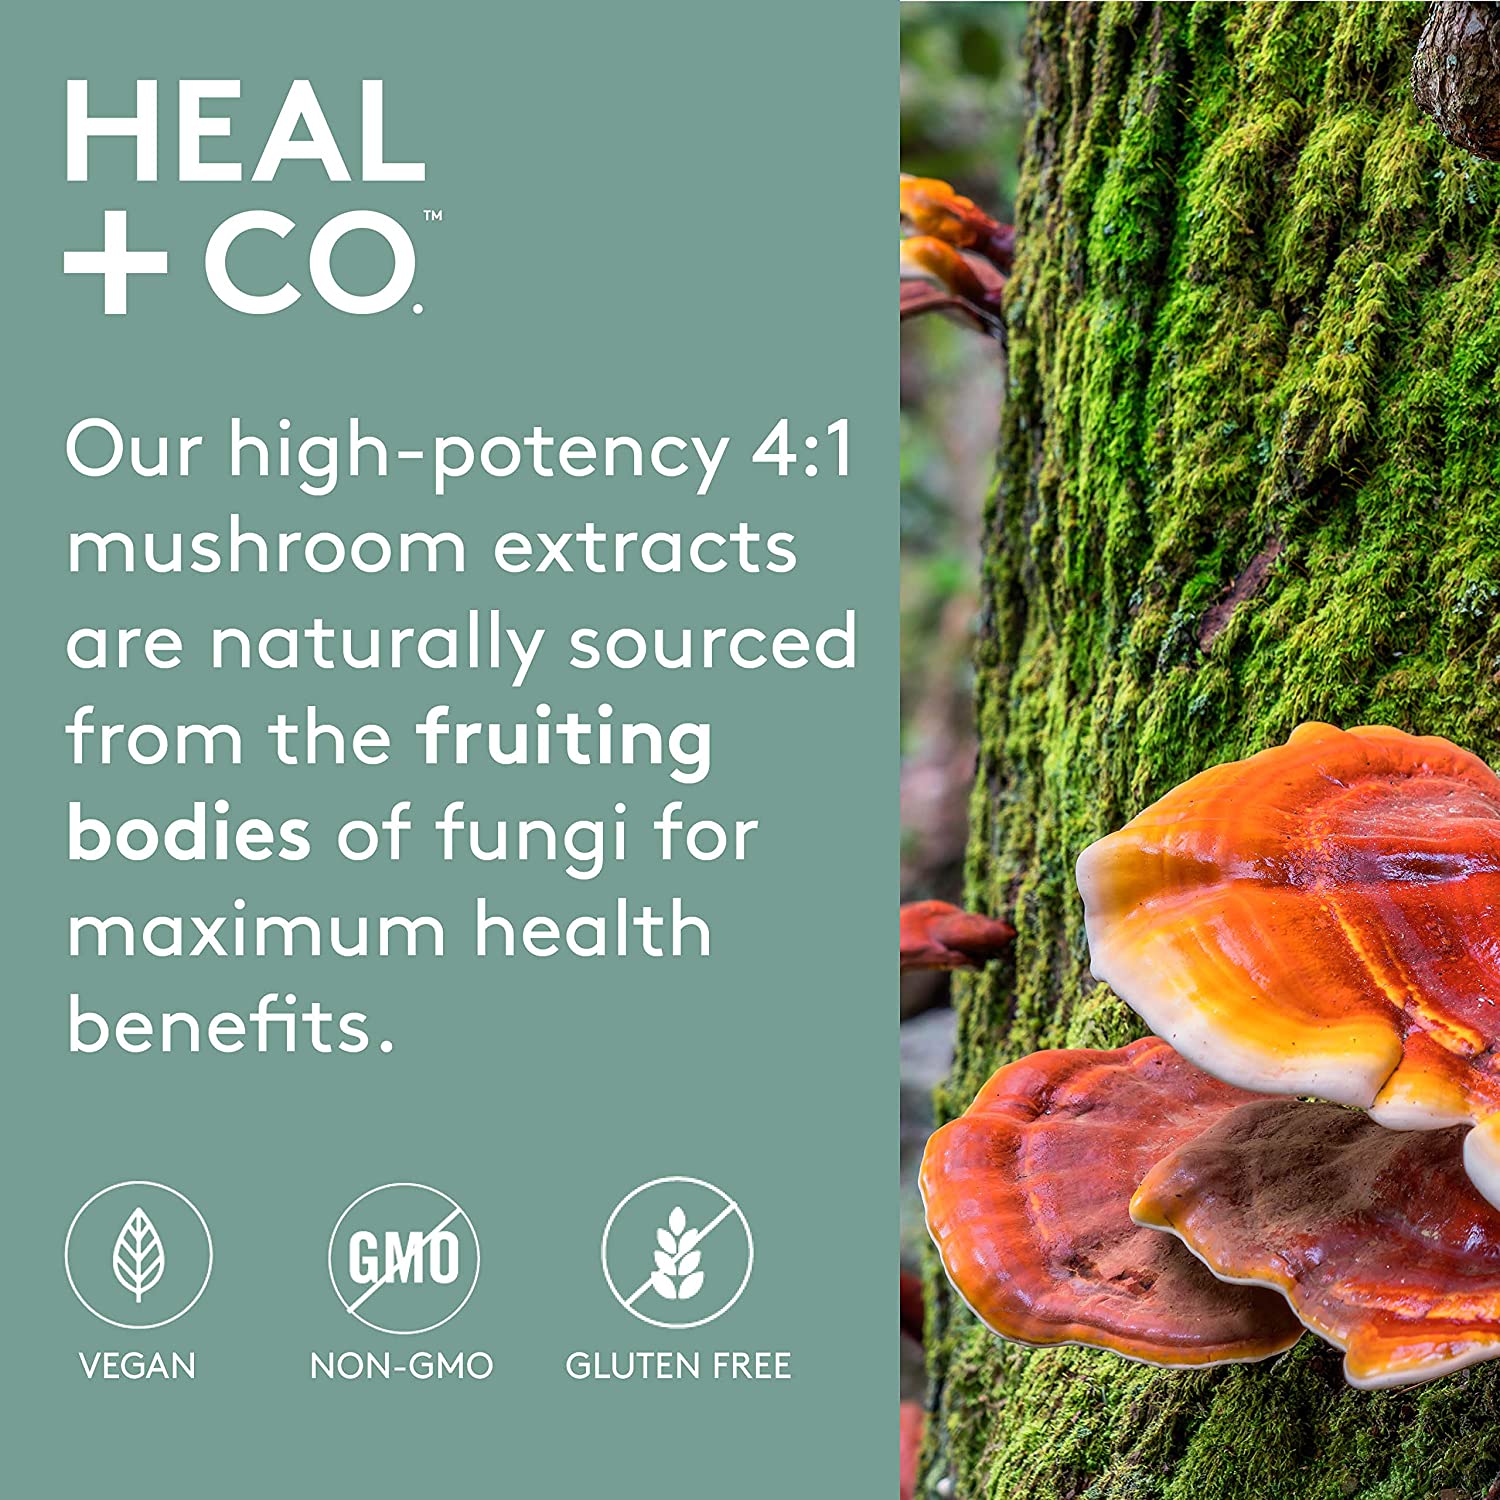 Heal + Co. Super Mushroom Complex (4:1) 500mg 120vcap